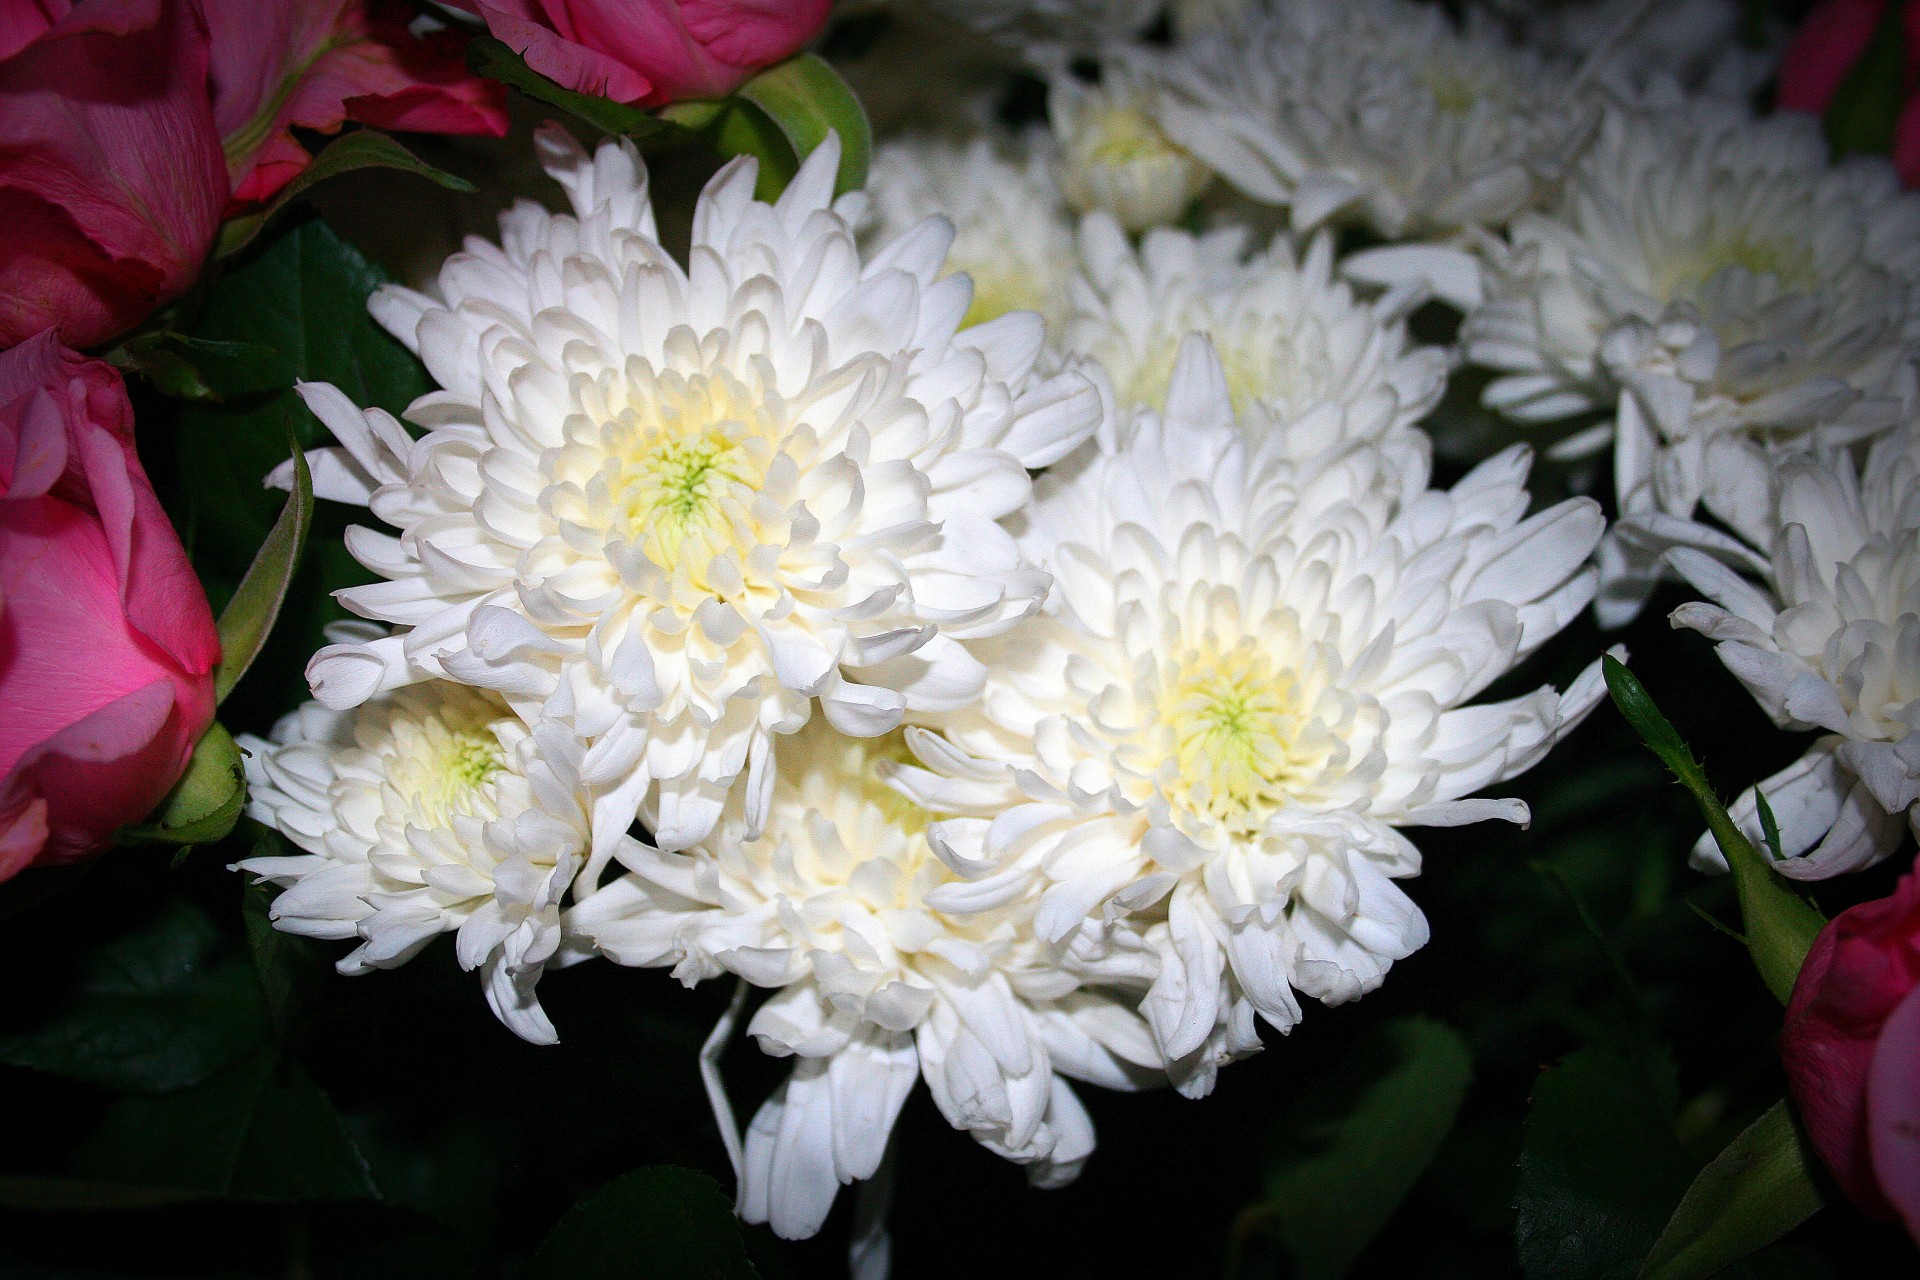 Crizanteme albe